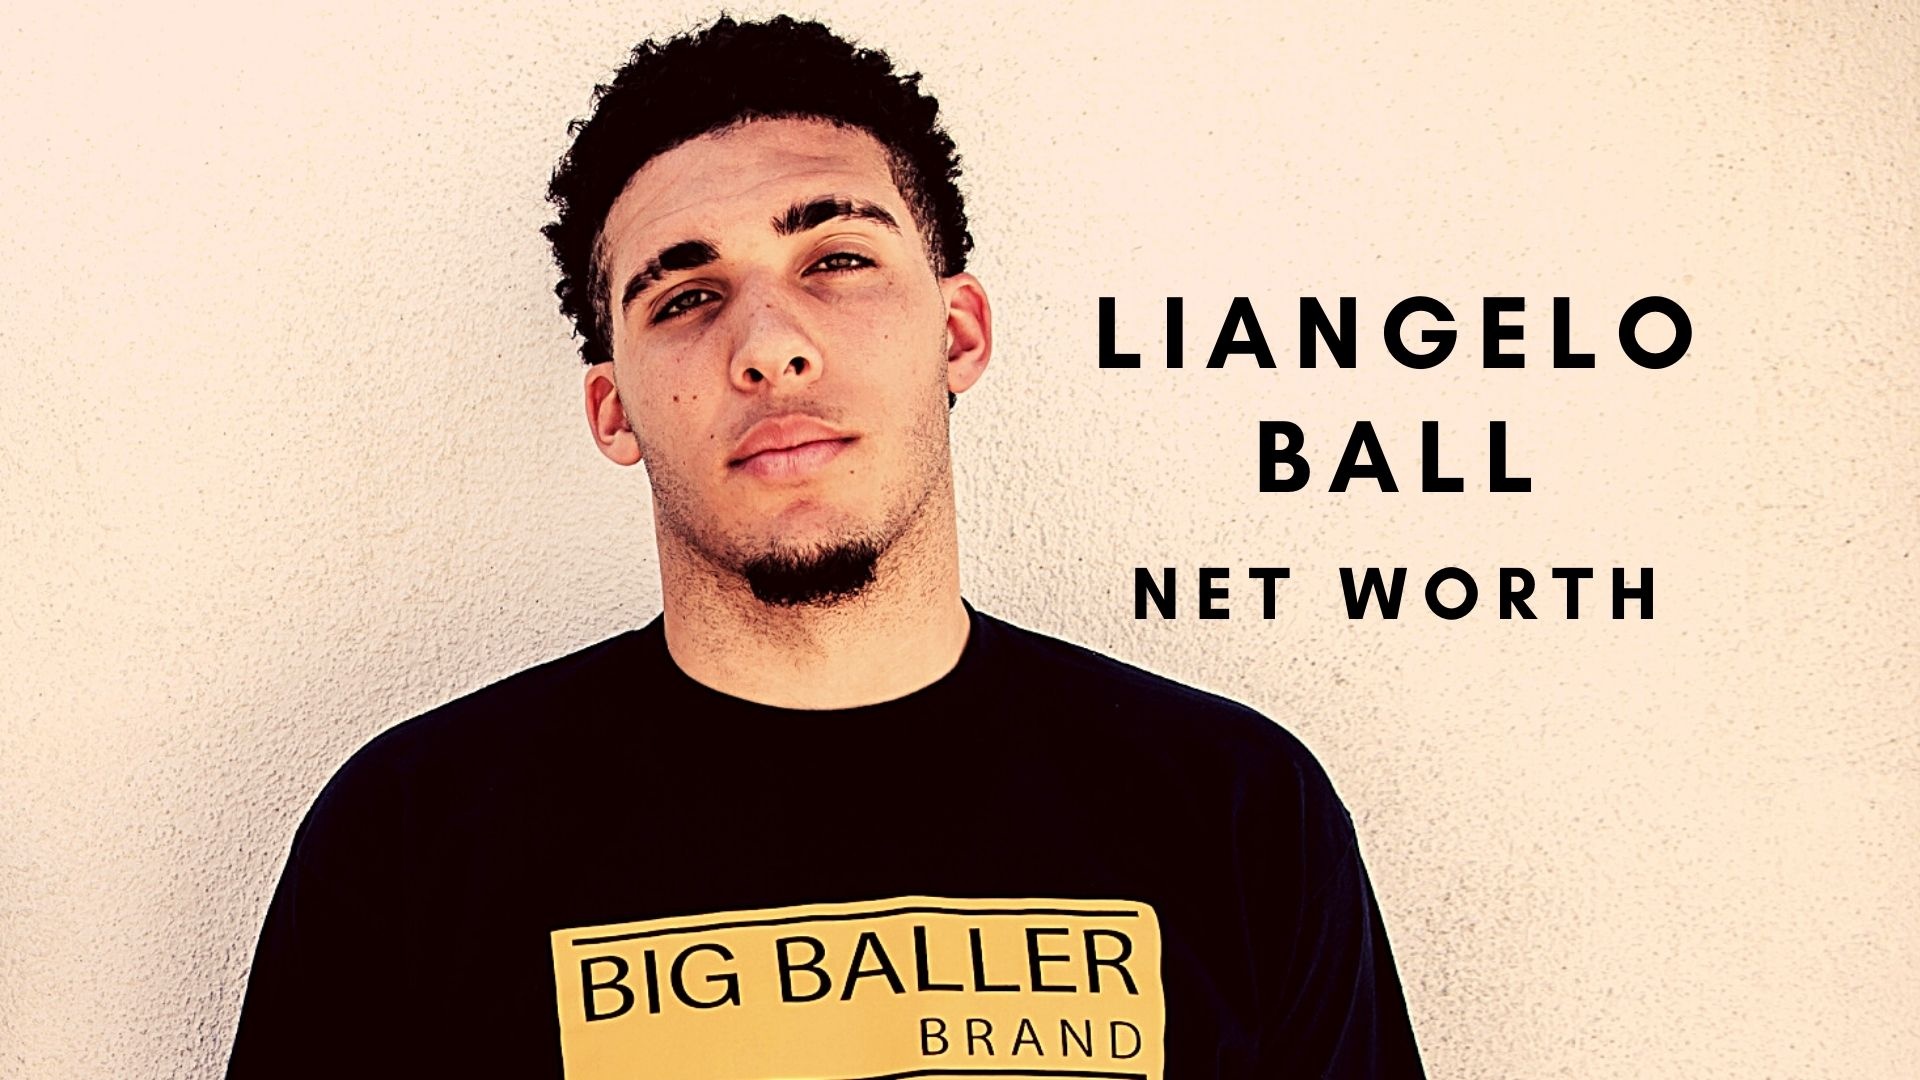 LiAngelo Ball, NBA player, Net worth, Rich, 1920x1080 Full HD Desktop